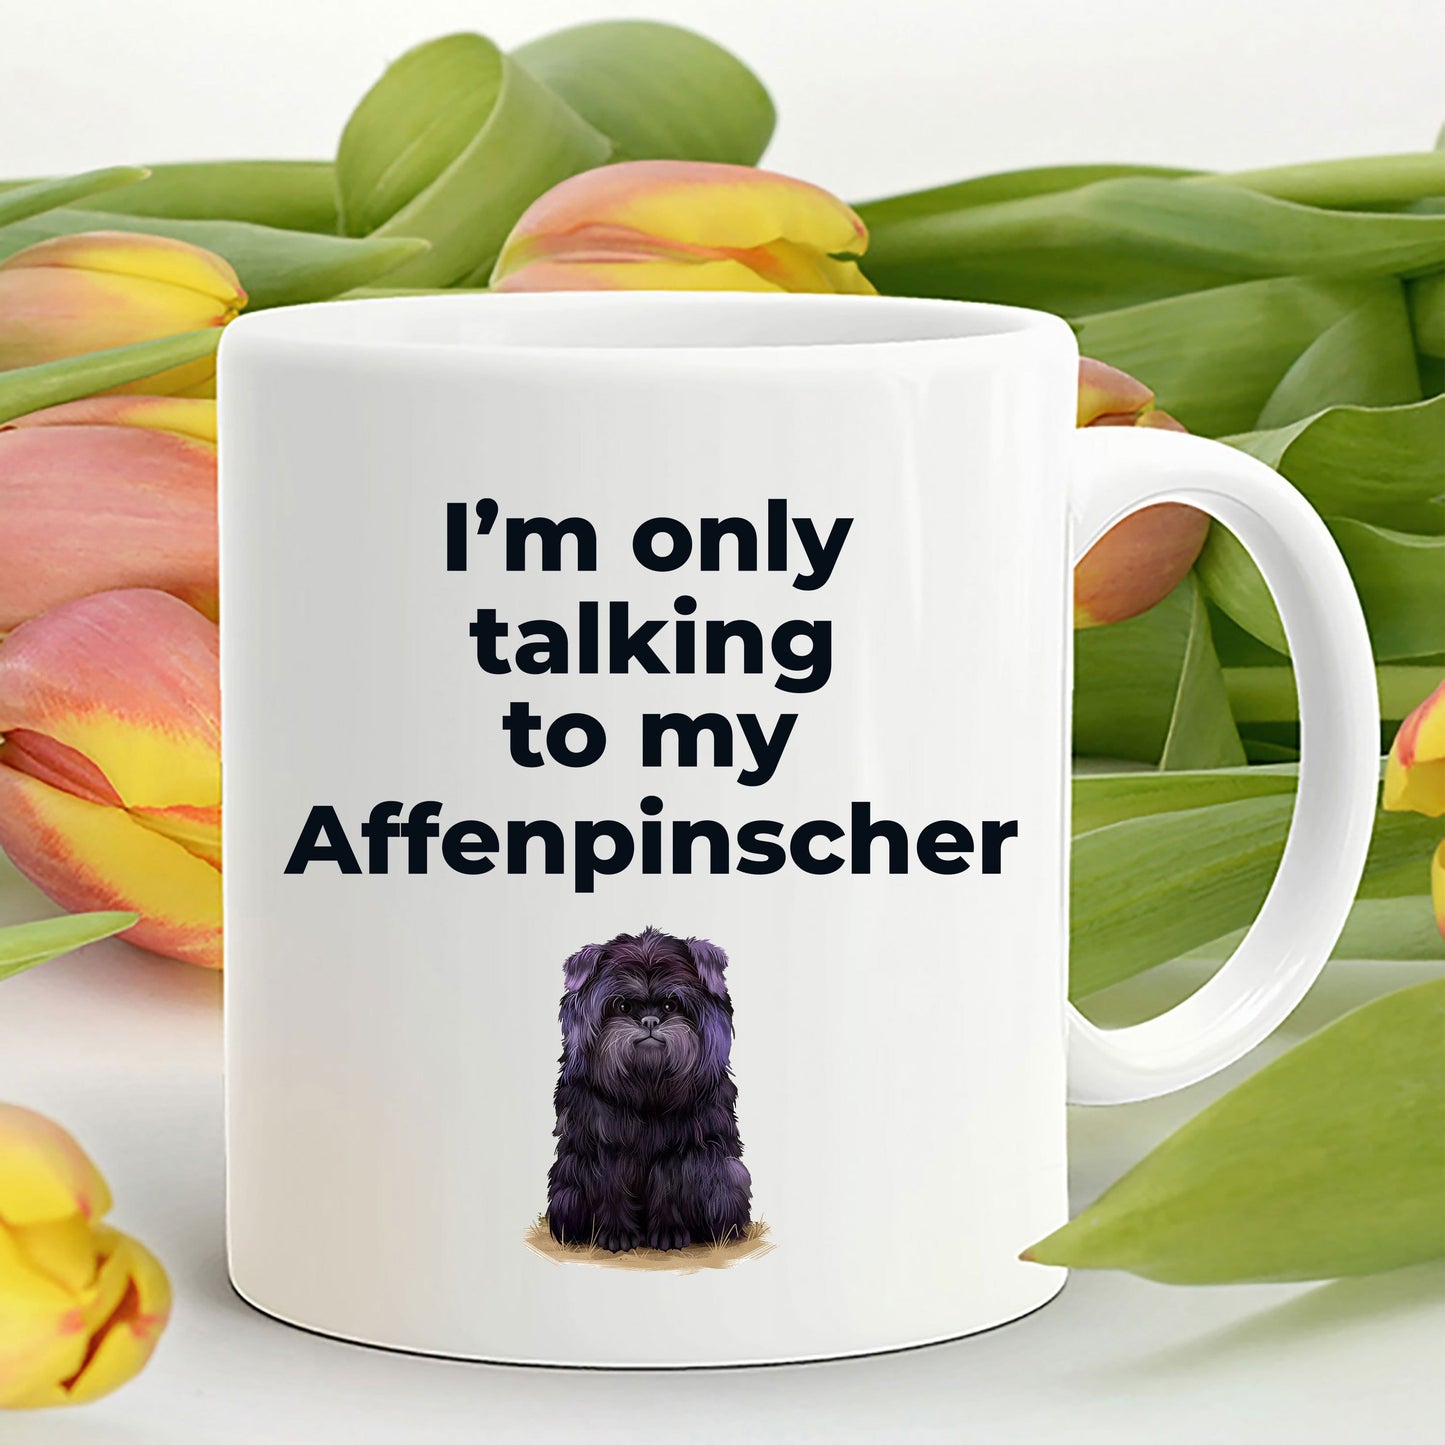 Affenpinscher dog funny coffee mug - I'm only talking to my Affenpinscher